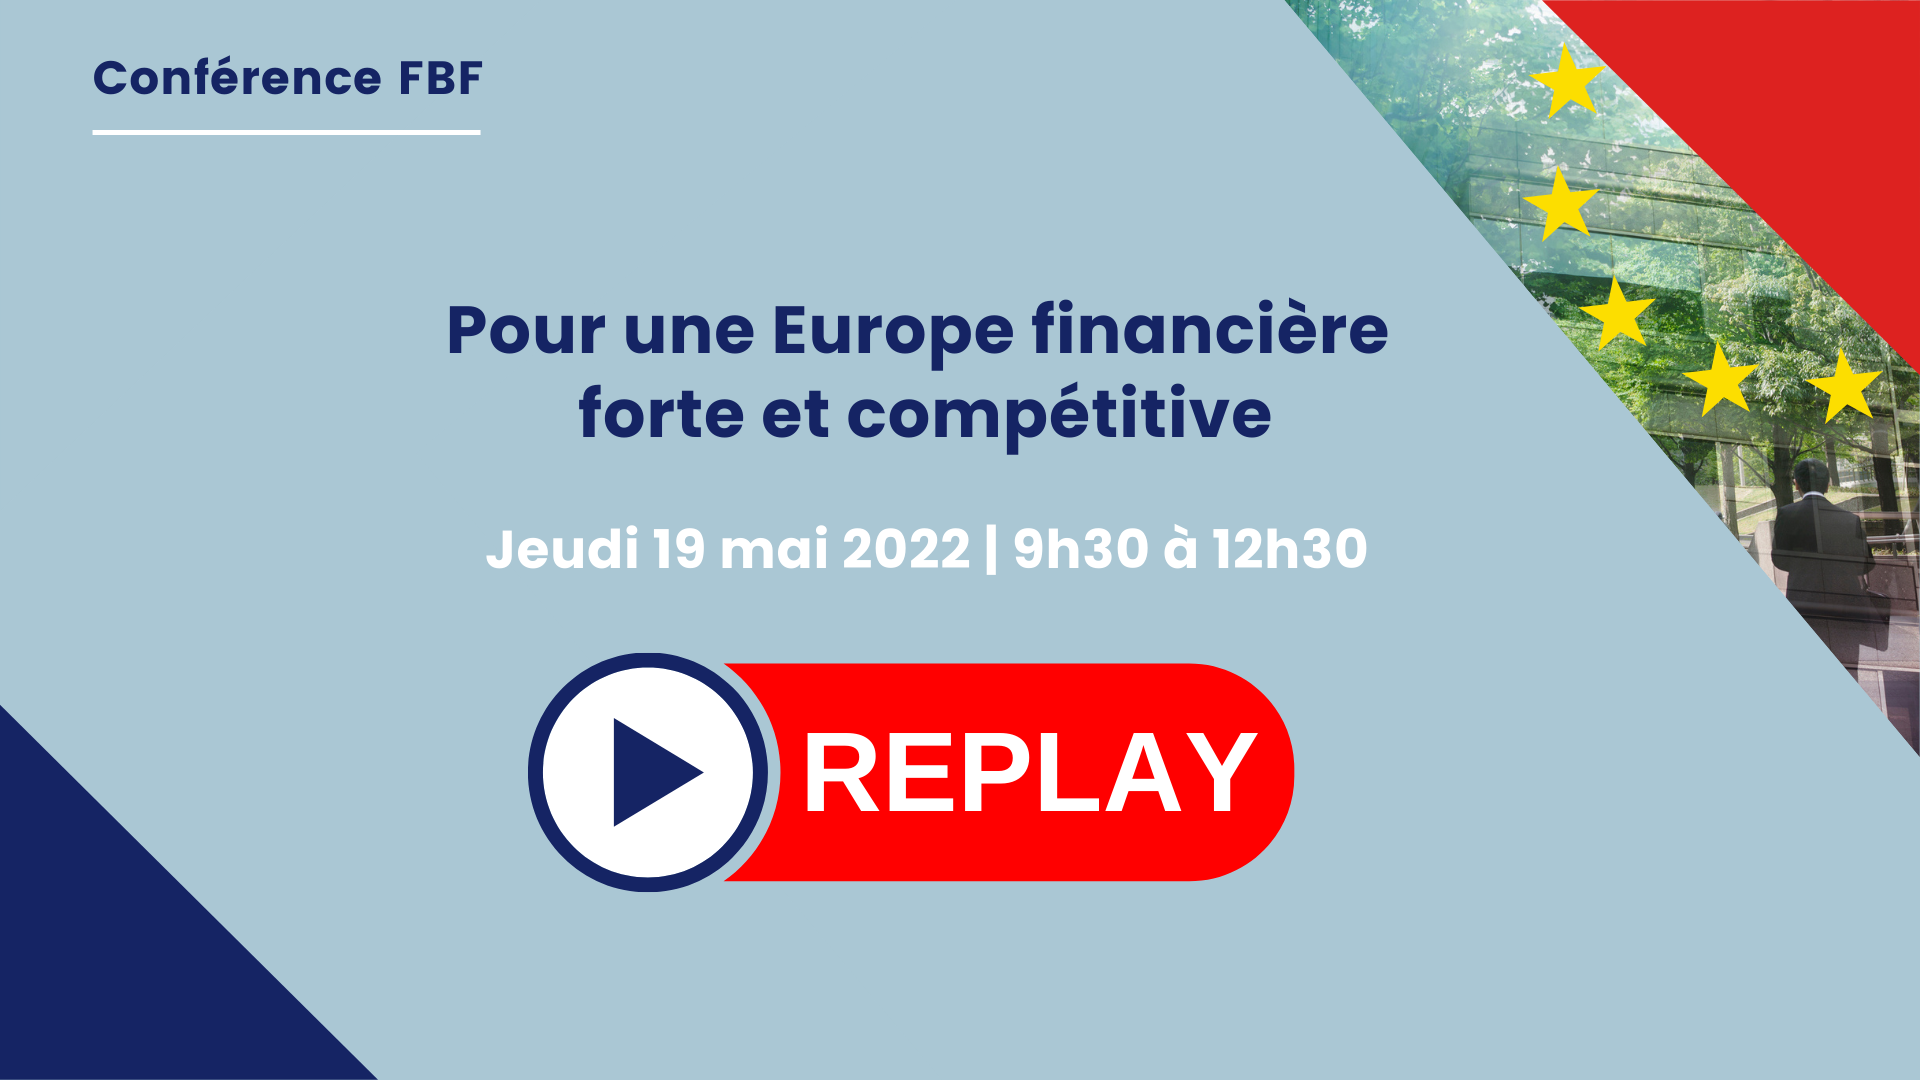 [Replay] Pour une Europe financière forte et compétitive une conférence de la FBF